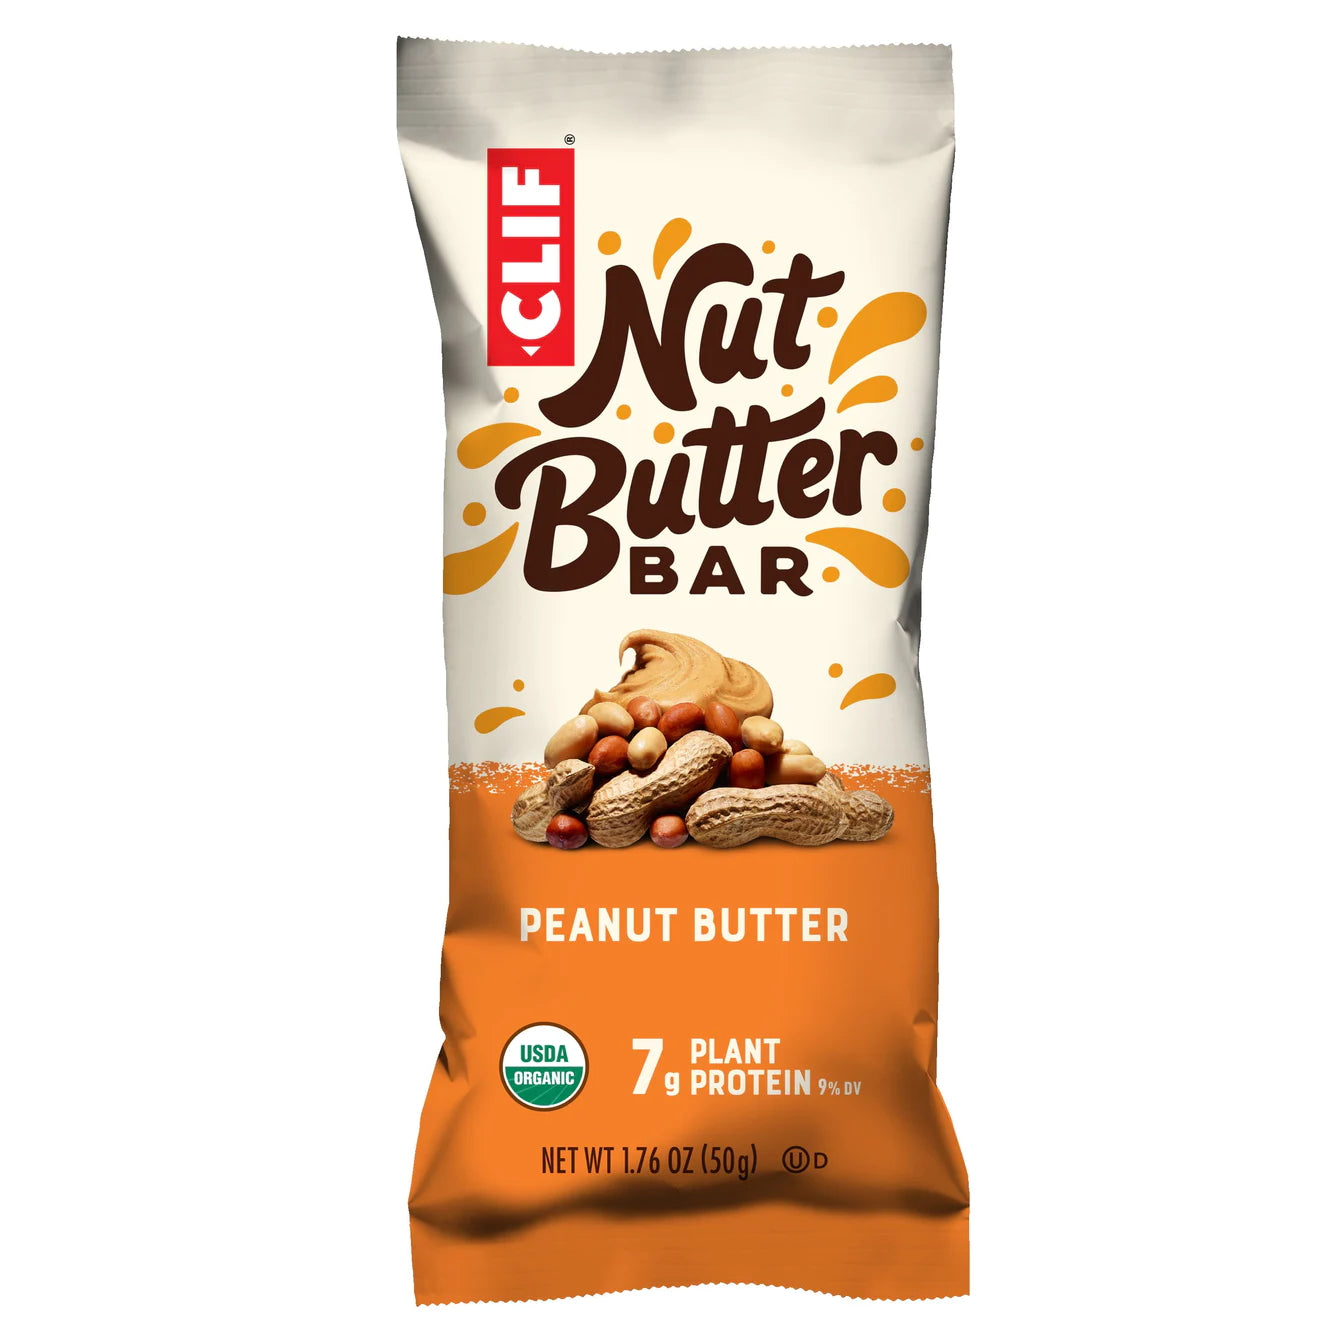 CLIF BAR Energie Riegel Nut Butter Bar, Peanut Butter, 50g